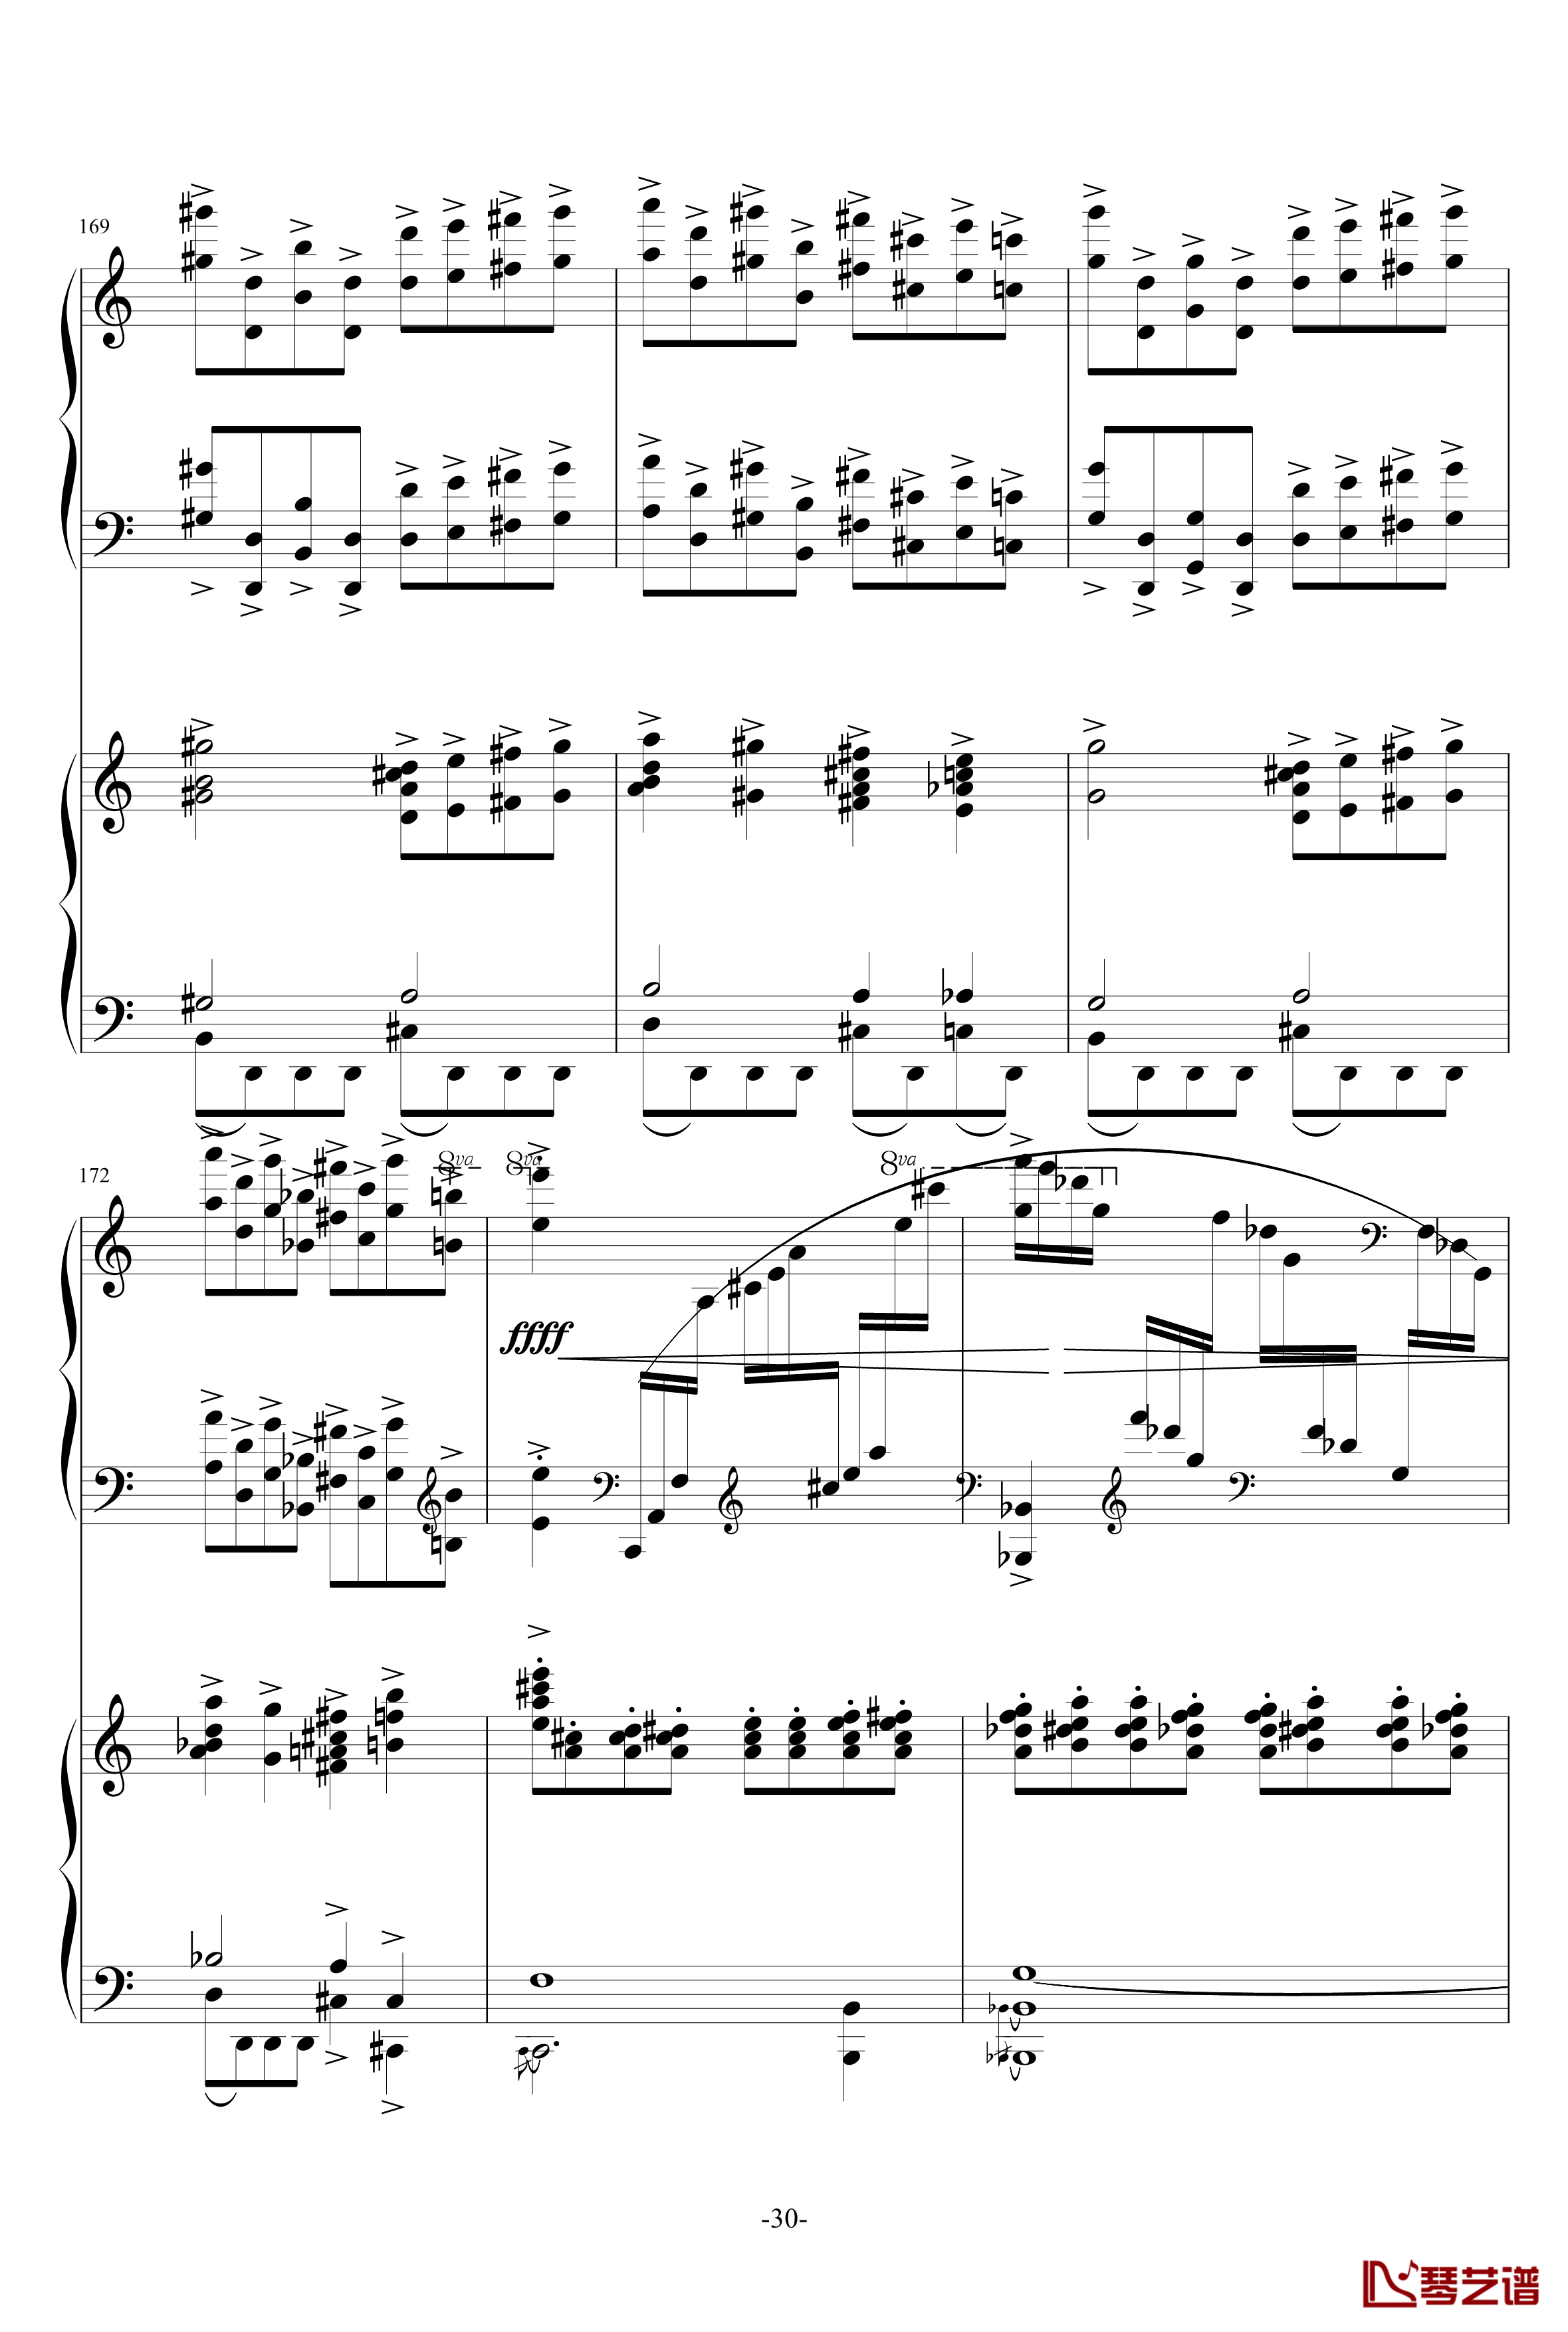 普罗科菲耶夫第三钢琴协奏曲第二乐章钢琴谱30